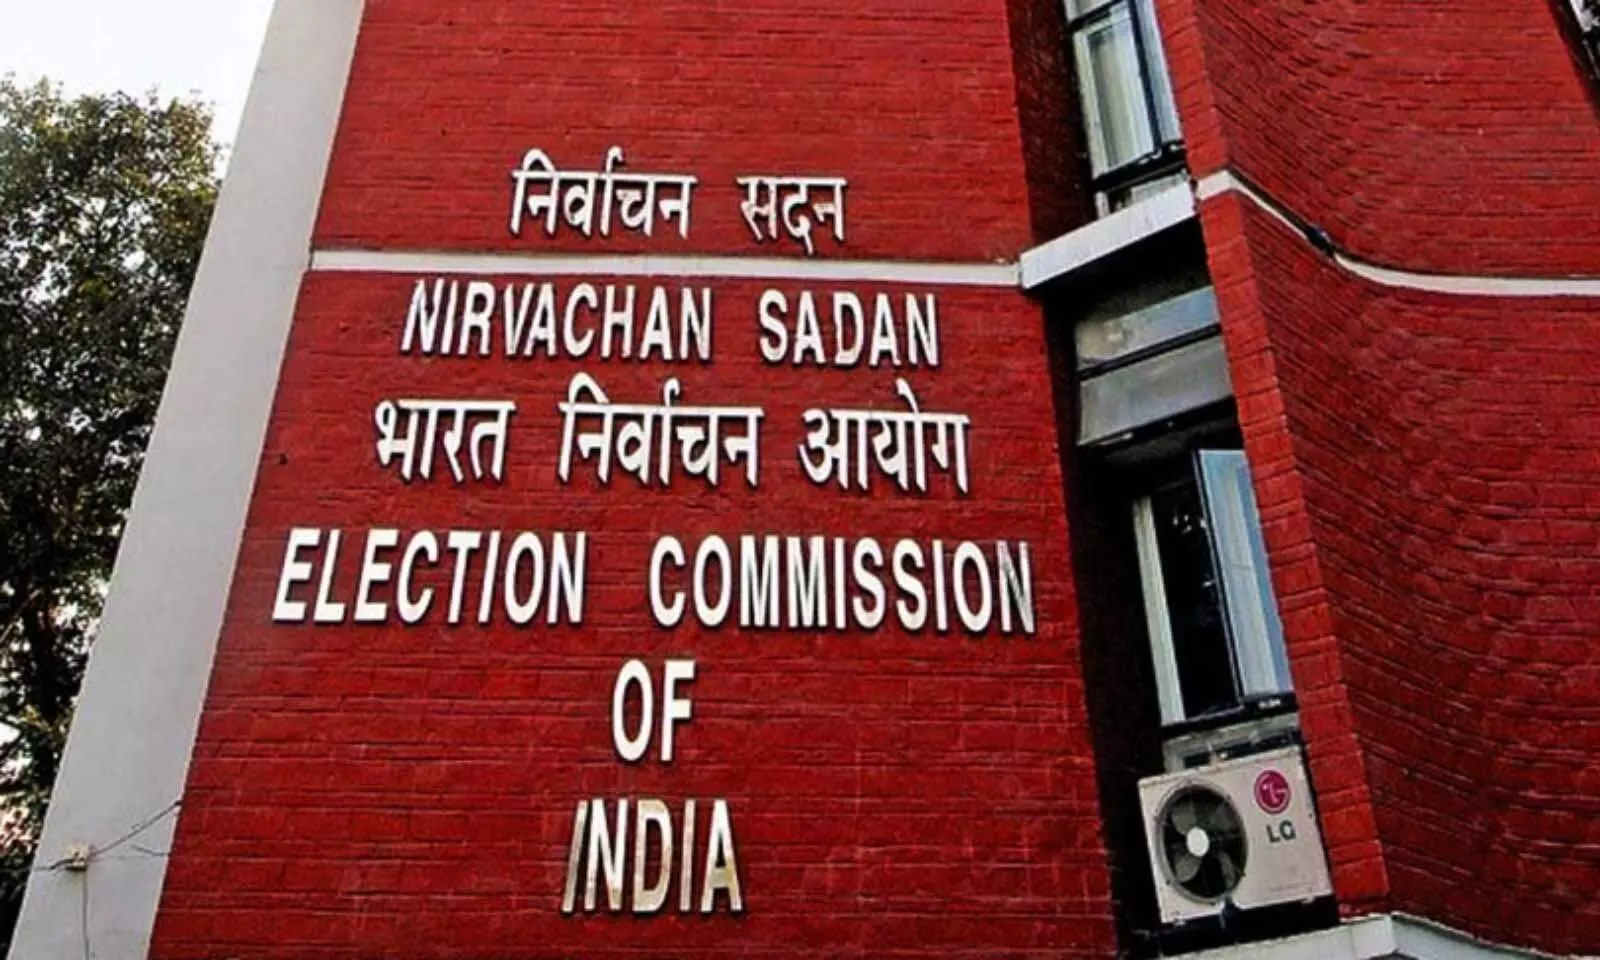 निर्वाचन आयोग ने चुनावी बॉन्ड के राजनीतिक दलों से प्राप्त आंकड़े जारी किए